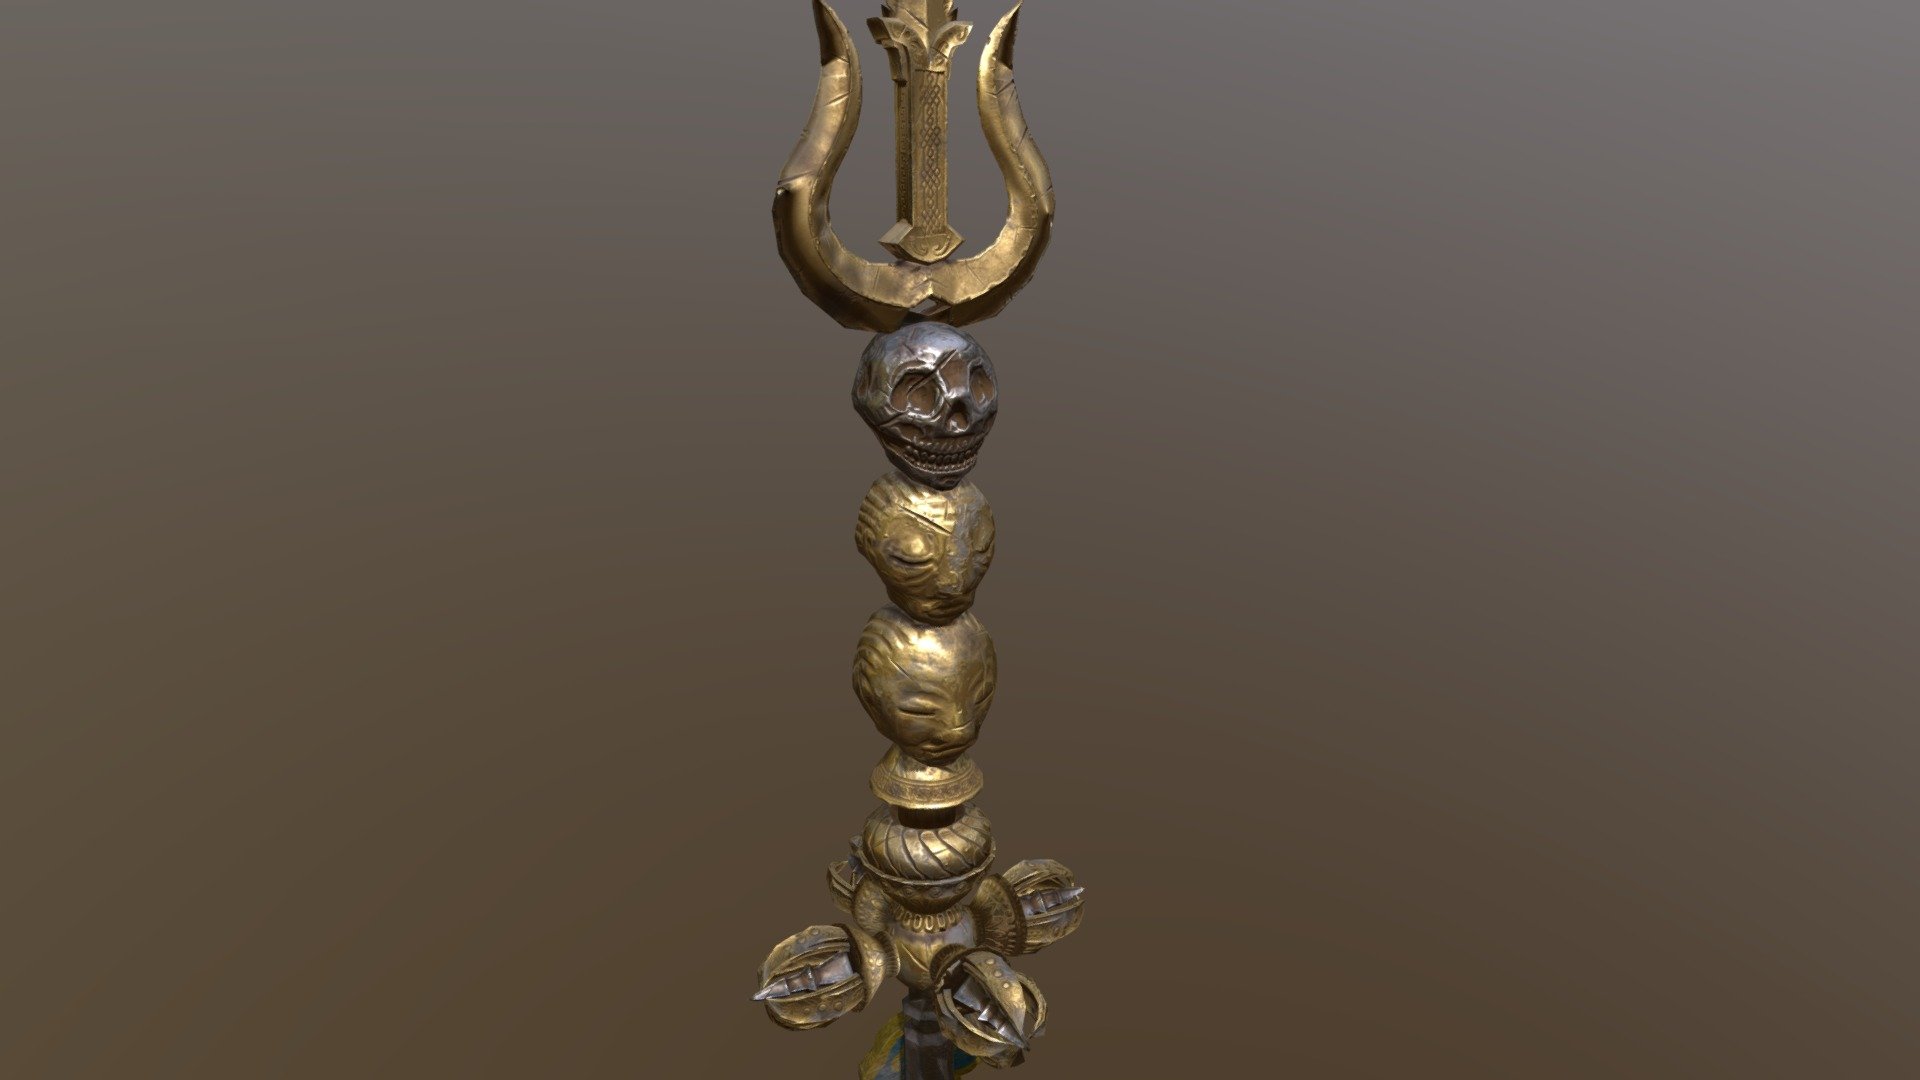 西藏佛教傳統法器之一 天杖
由多種文物組成 火焰三叉 骷髏頭 乾枯頭 流血頭寶瓶 金剛杵
基本長度在40公分上下 - Tibet Religious props - 3D model by YJW 3d model